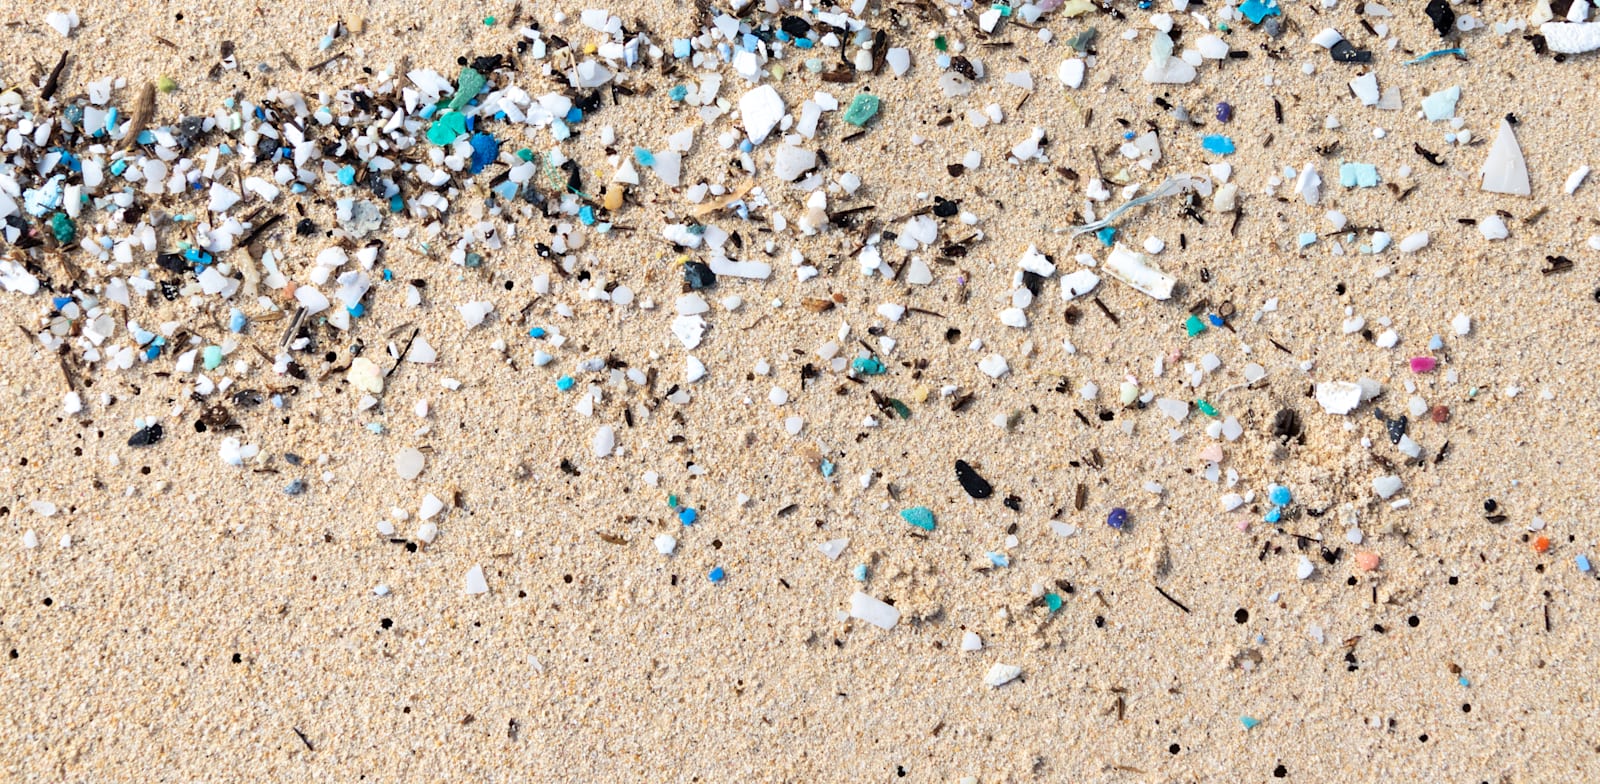 חלקיקי מיקרופלסטיק שנשטפו לחוף / צילום: Shutterstock